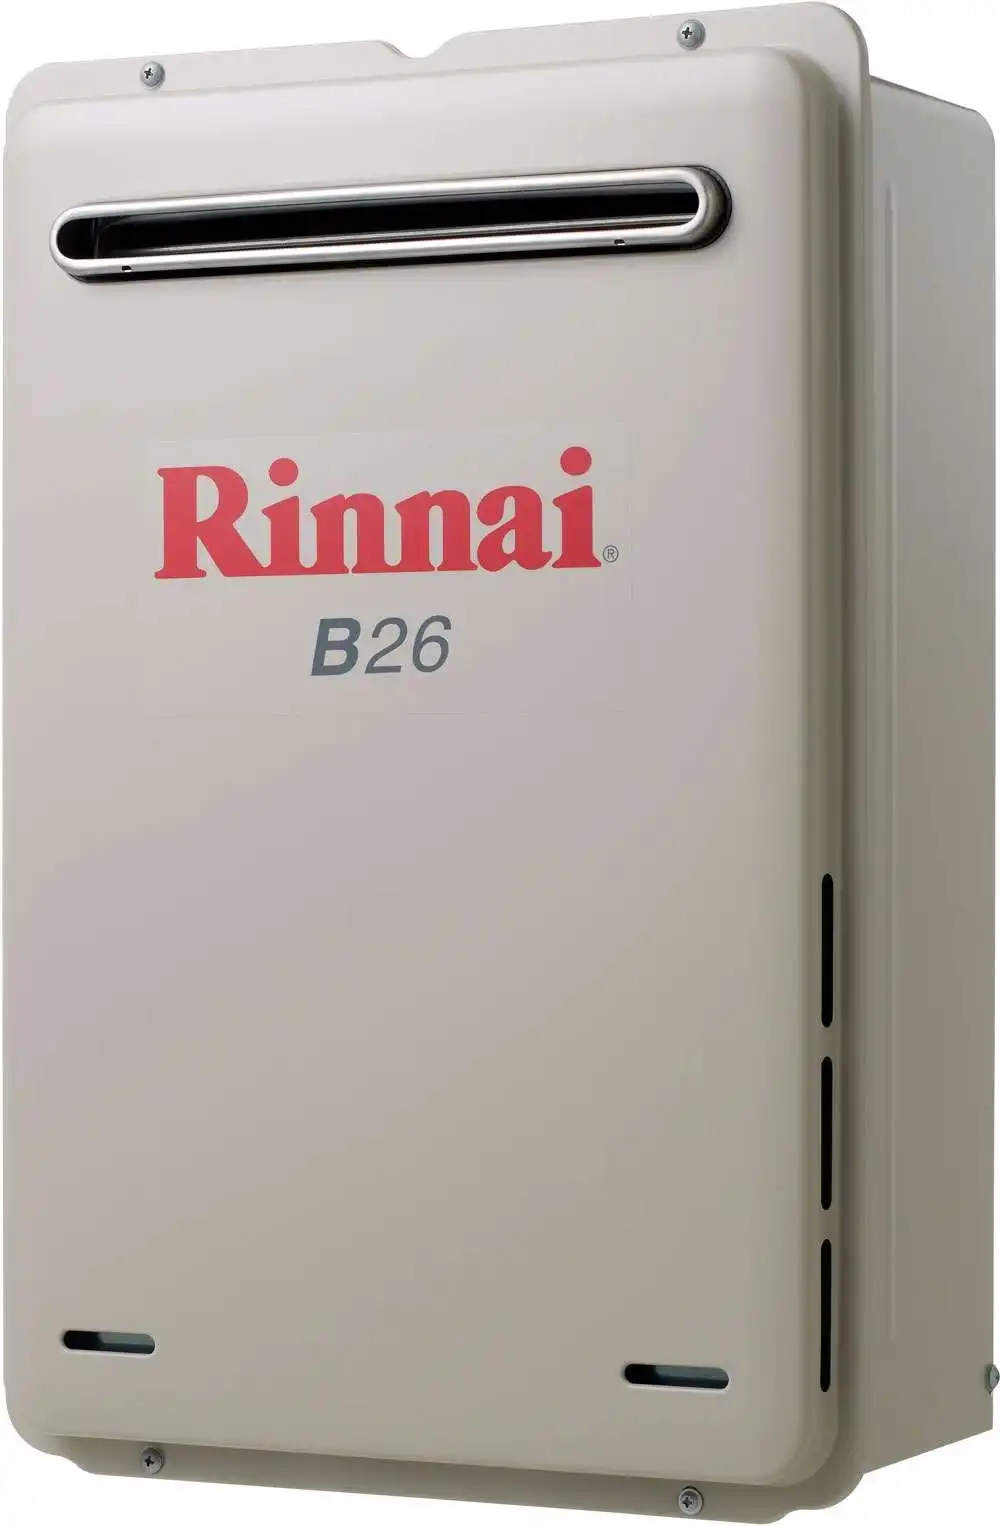 Rinnai Builders 50oC 26L Instant Hot Water System B26L50A B26 *LPG GAS*